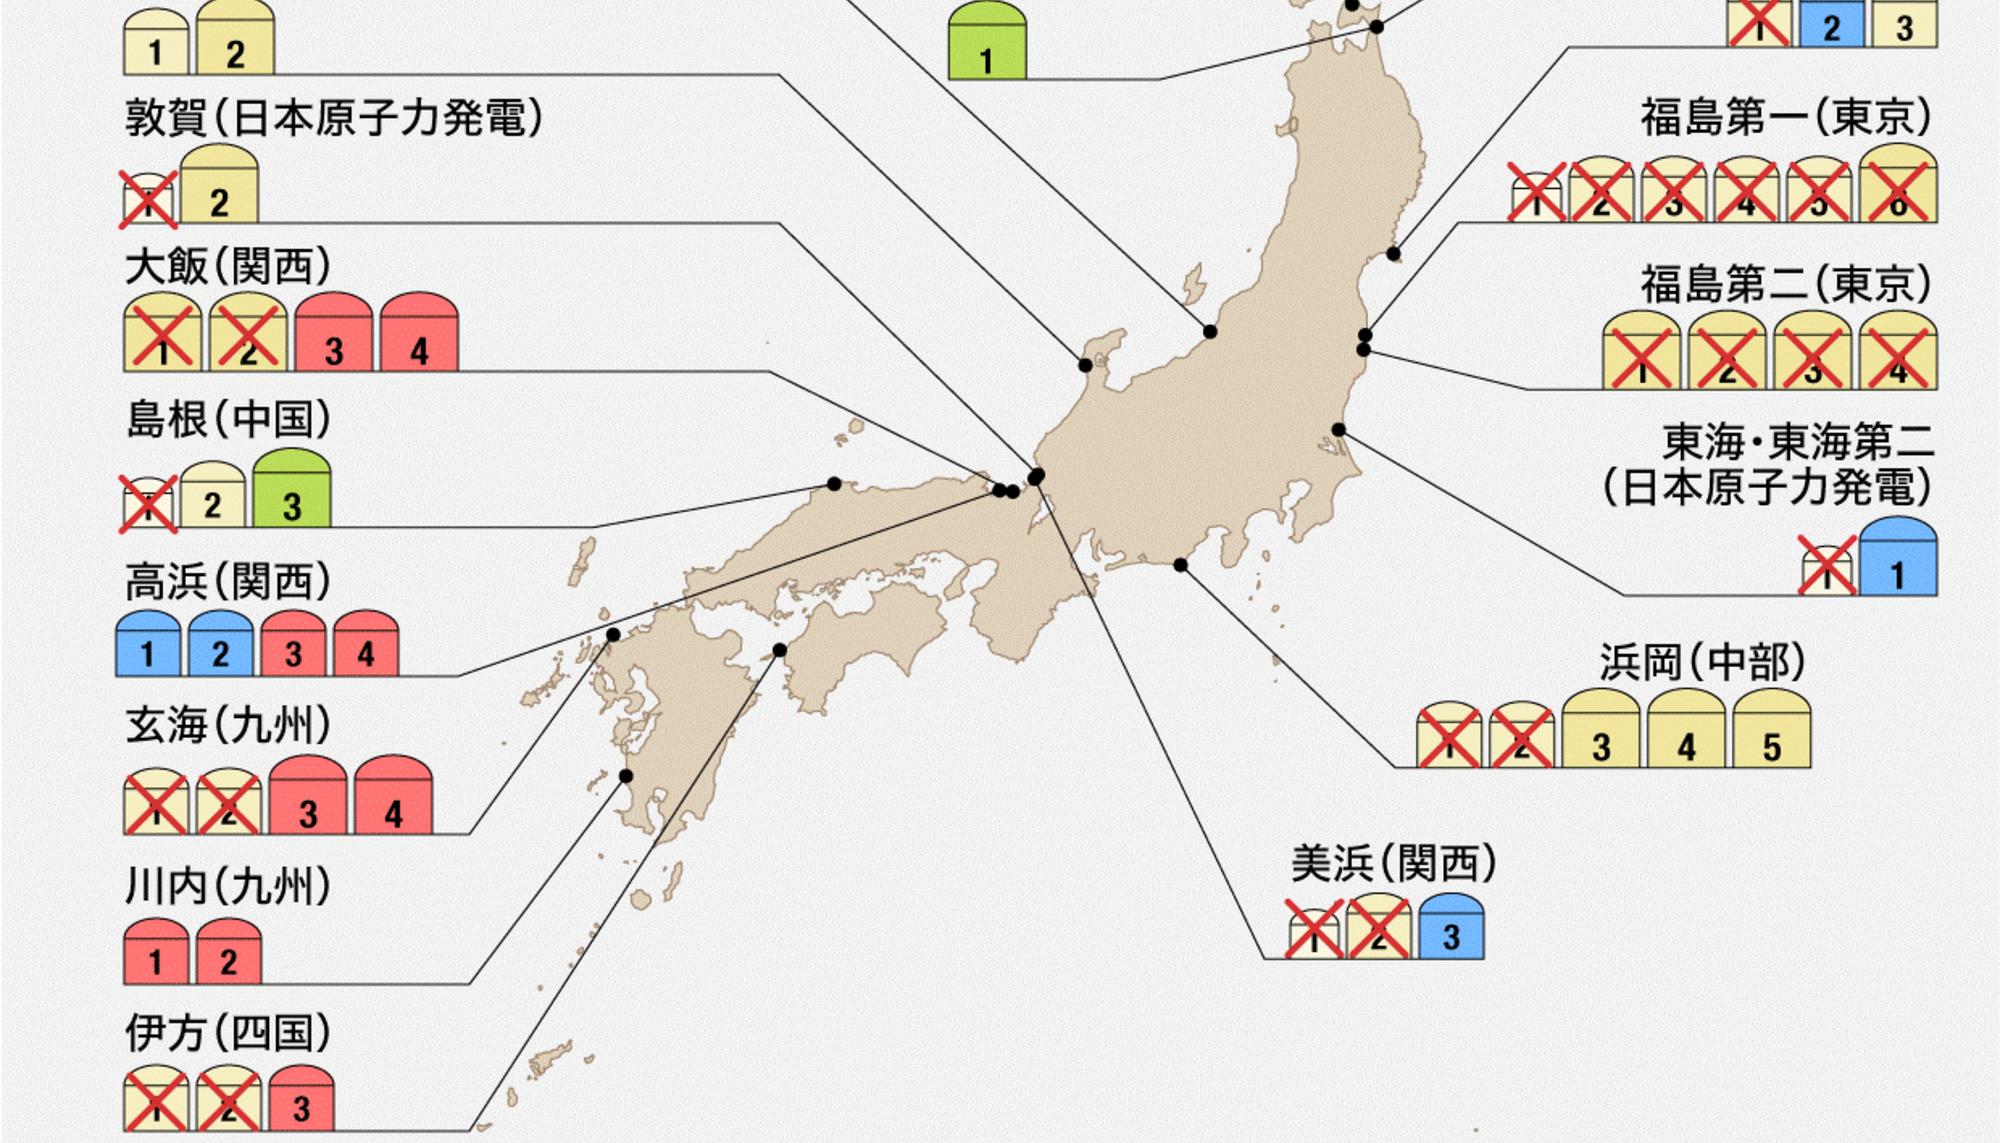 Mapa de centrales nucleares de 6 de marzo de 2020 En color rojo: unidades en funcionamiento; azul: unidades aprobadas. Fuente: Nippon Com